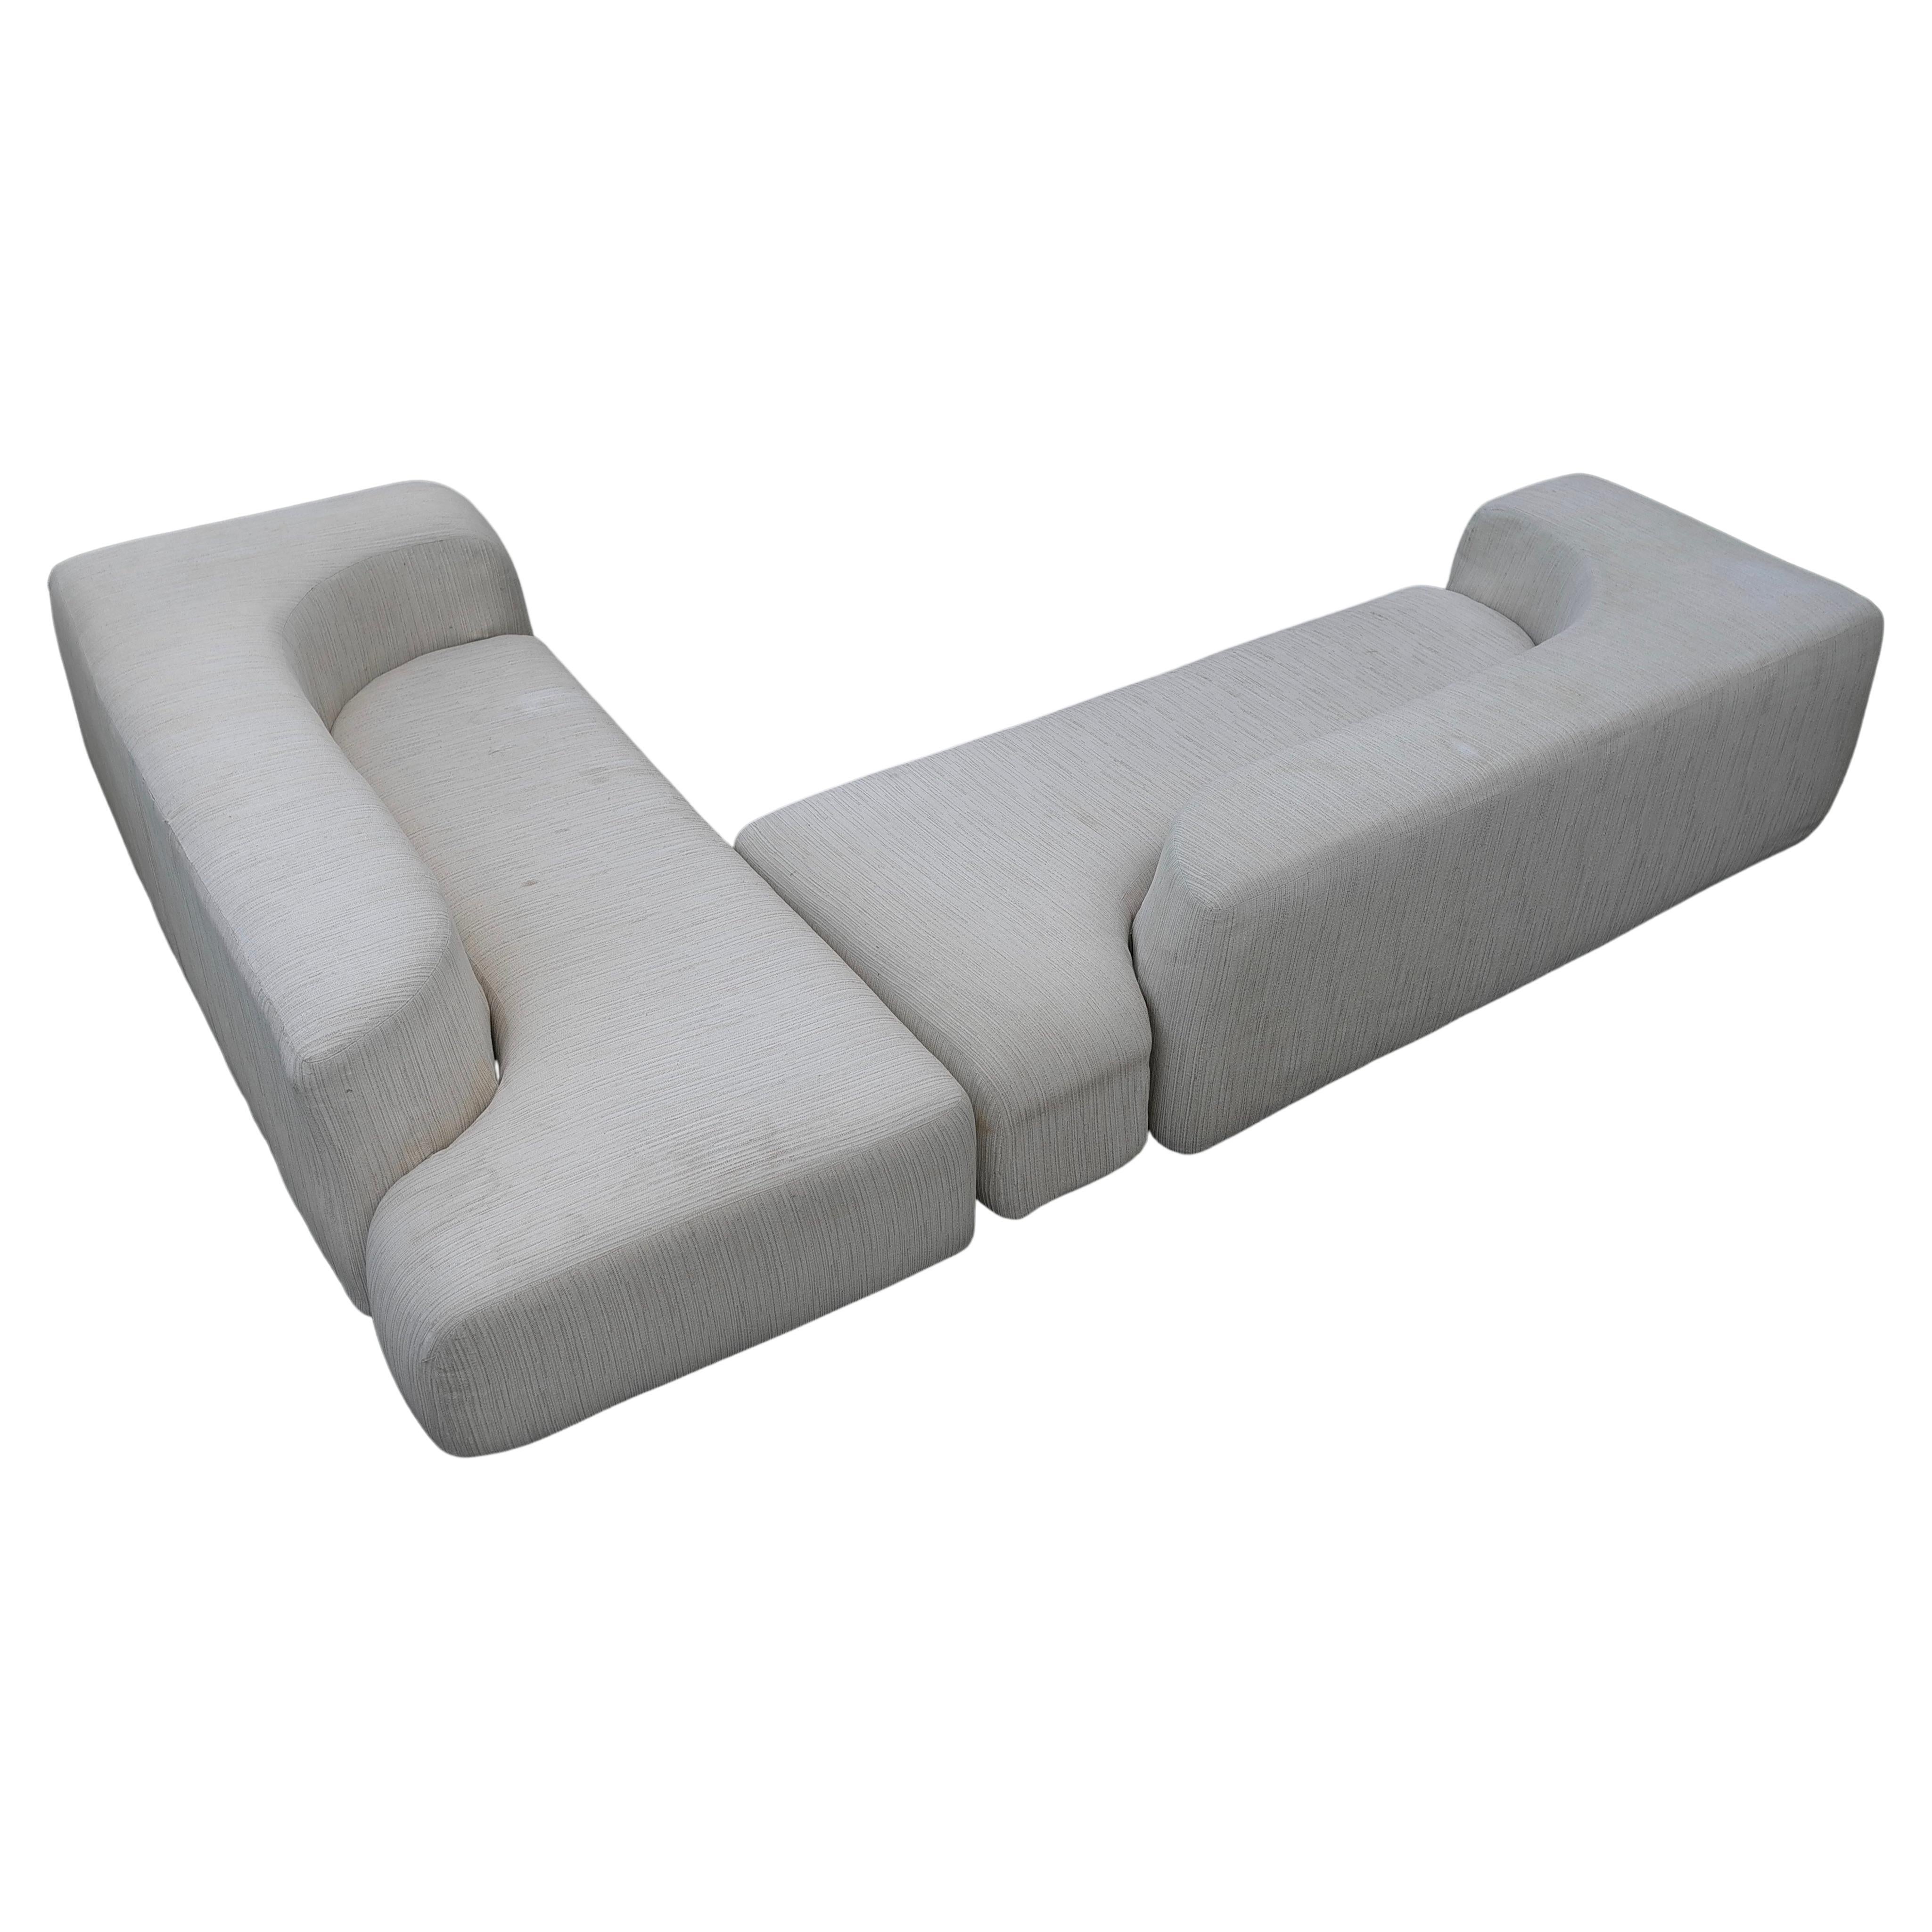 Seltenes skulpturales Sofa von Edoardo Landi für Nikol Internazionale, Italien 1971

Mit diesem Sofa holen Sie sich nicht nur Komfort in Ihr Zuhause, sondern auch ein großes Kunstwerk. 
Das Sofa schafft eine schalenartige Umgebung, die den Sitzenden